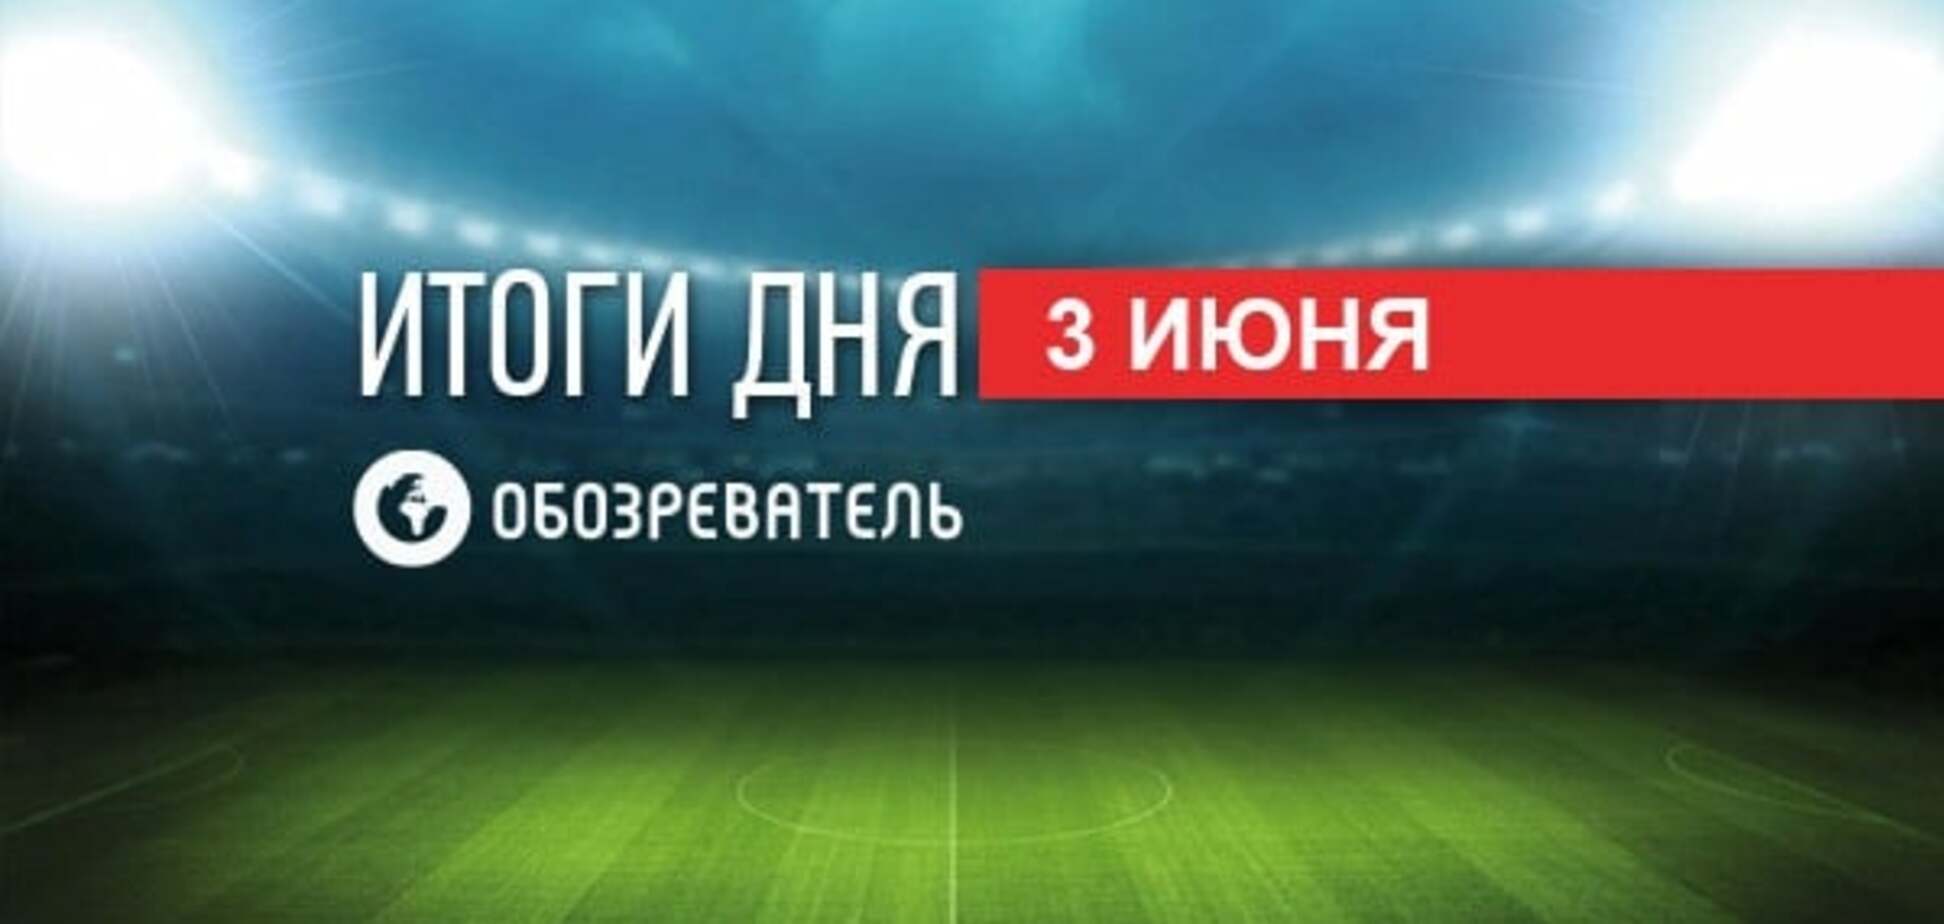 Последний тест сборной Украины перед Евро-2016. Спортивные итоги 3 июня